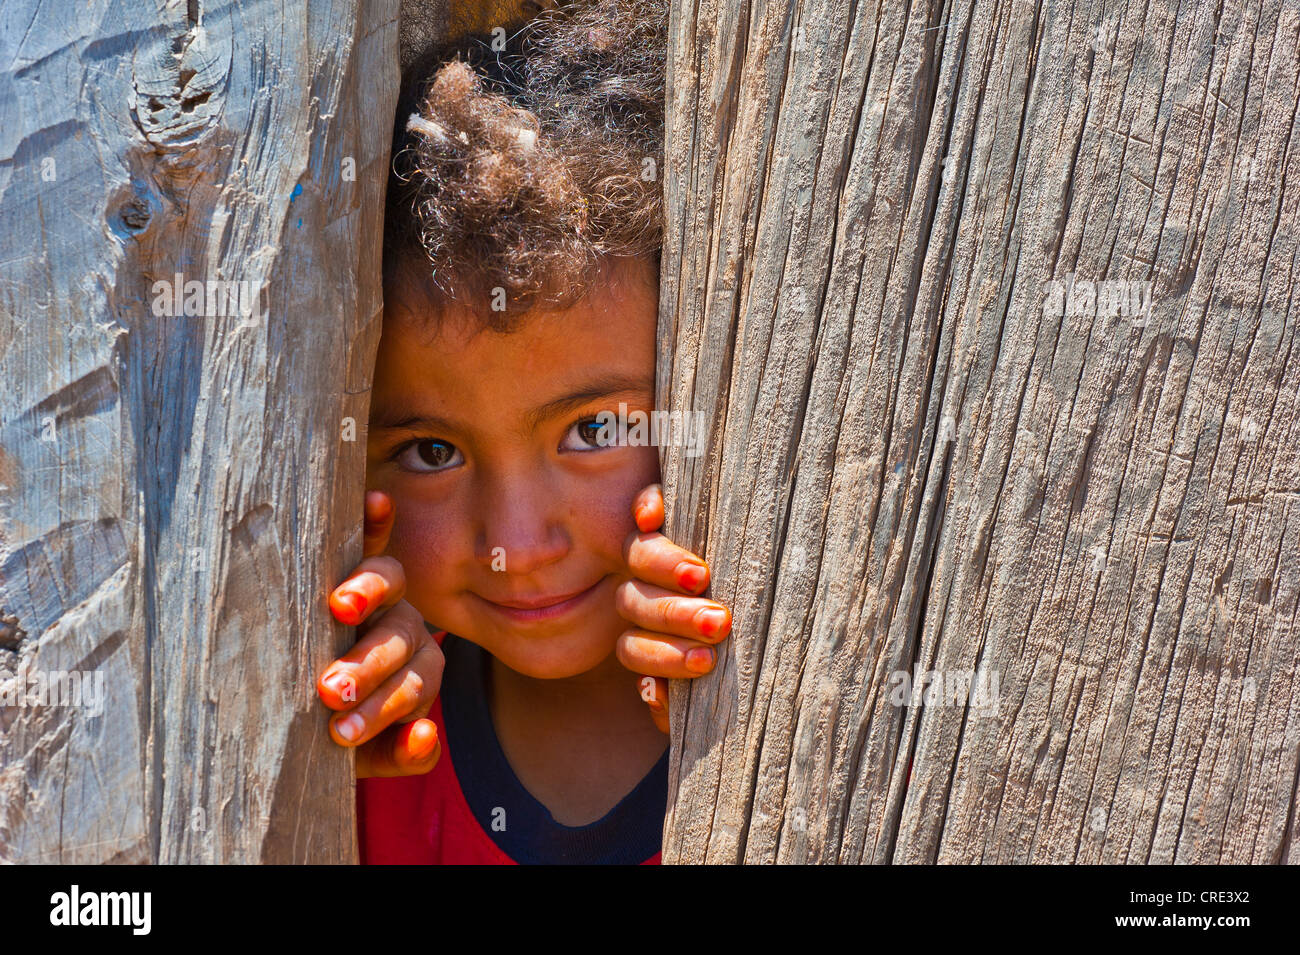 Jeune garçon à la recherche d'un écart en curieusement un mur en bois, Moyen Atlas, Maroc, Afrique Banque D'Images